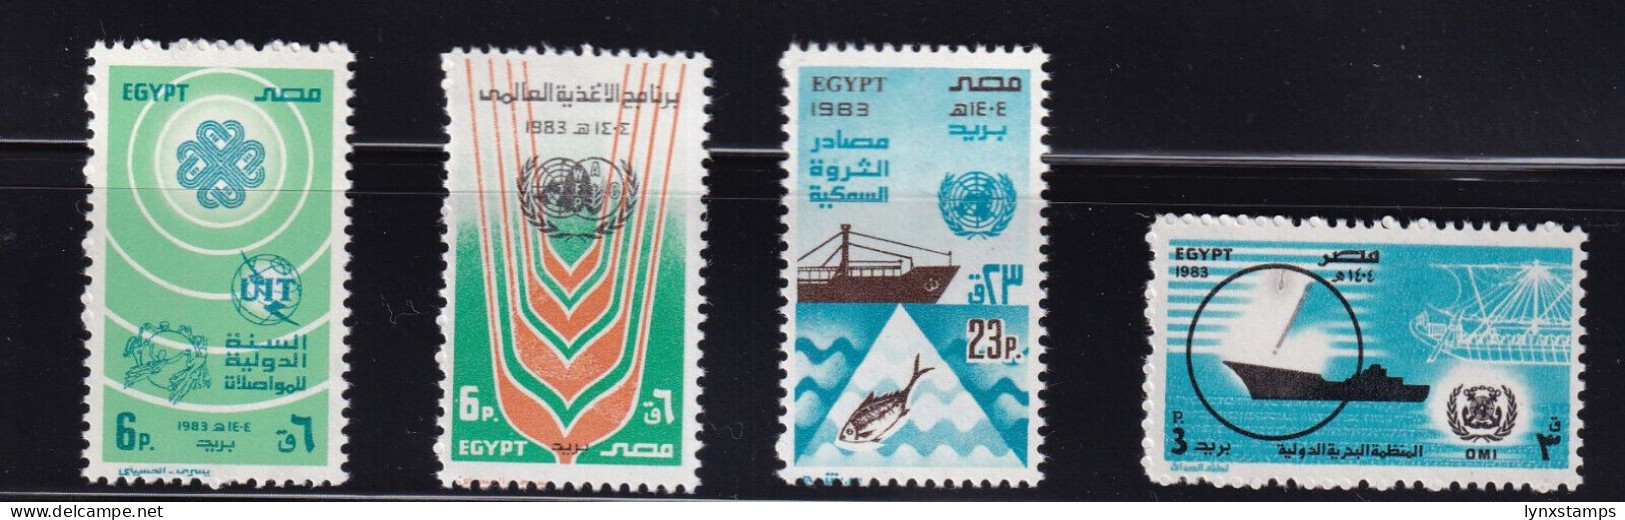 LI06 Egypt 1983 United Nations Day Mint Stamps Full Set - Ongebruikt